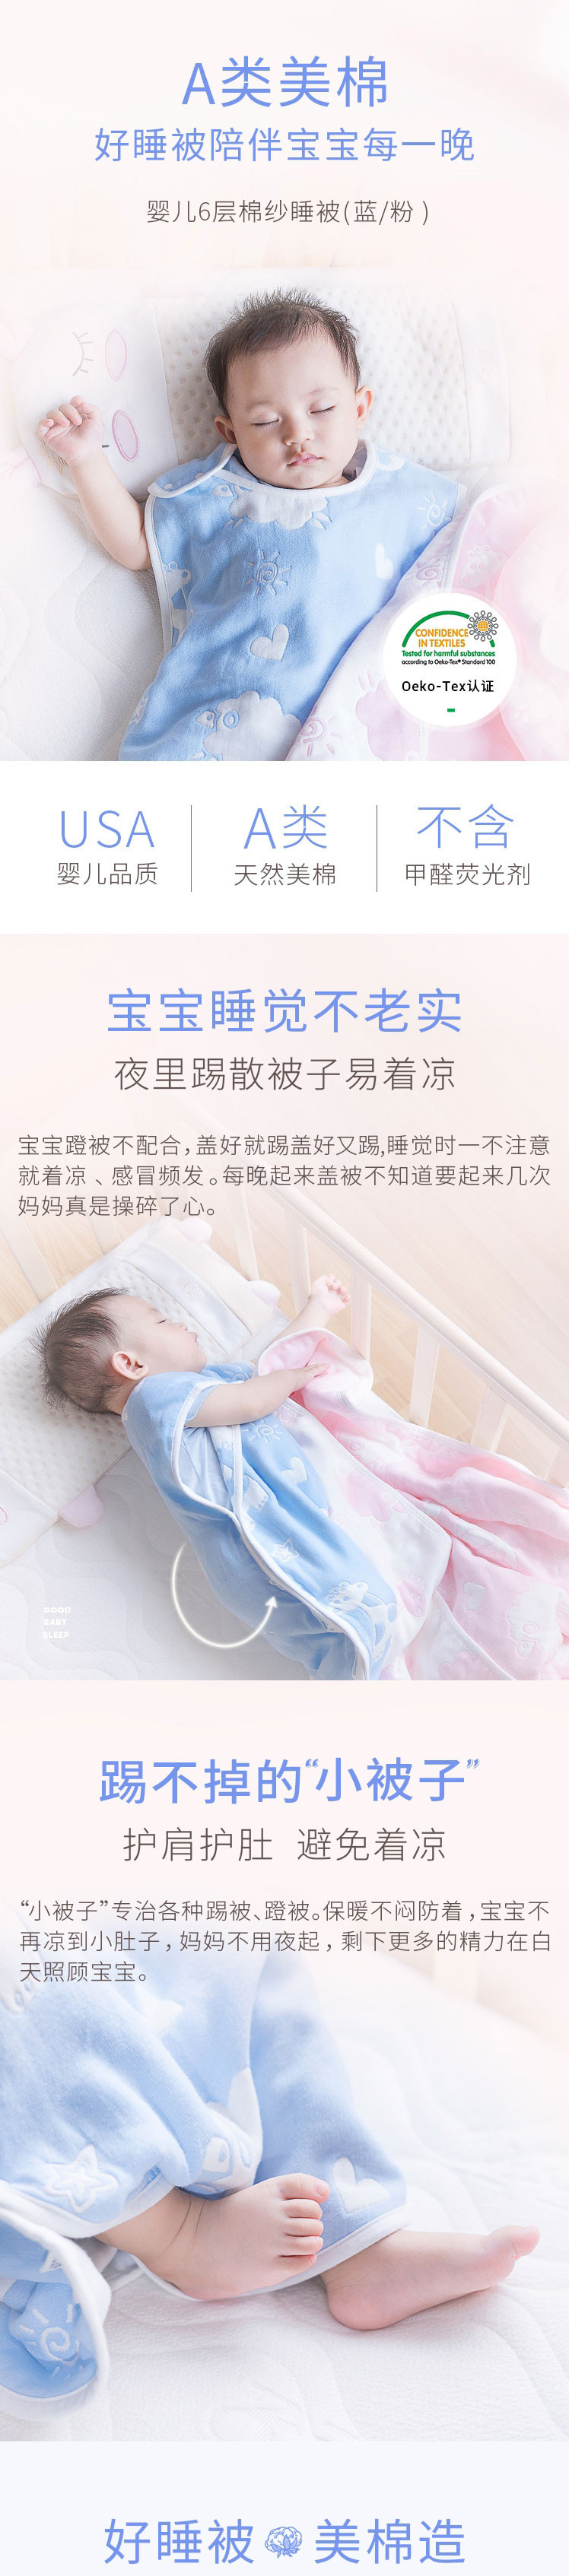 子初 婴儿6层棉纱睡被 蓝/粉M/L码